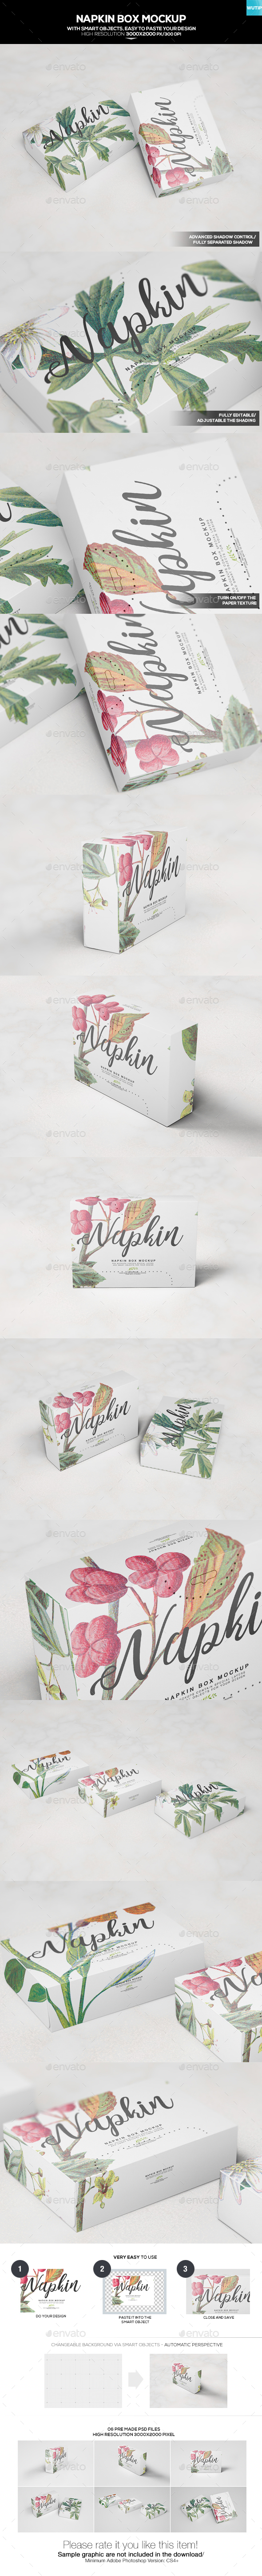 Download Napkin Box Mockup by Wutip | GraphicRiver